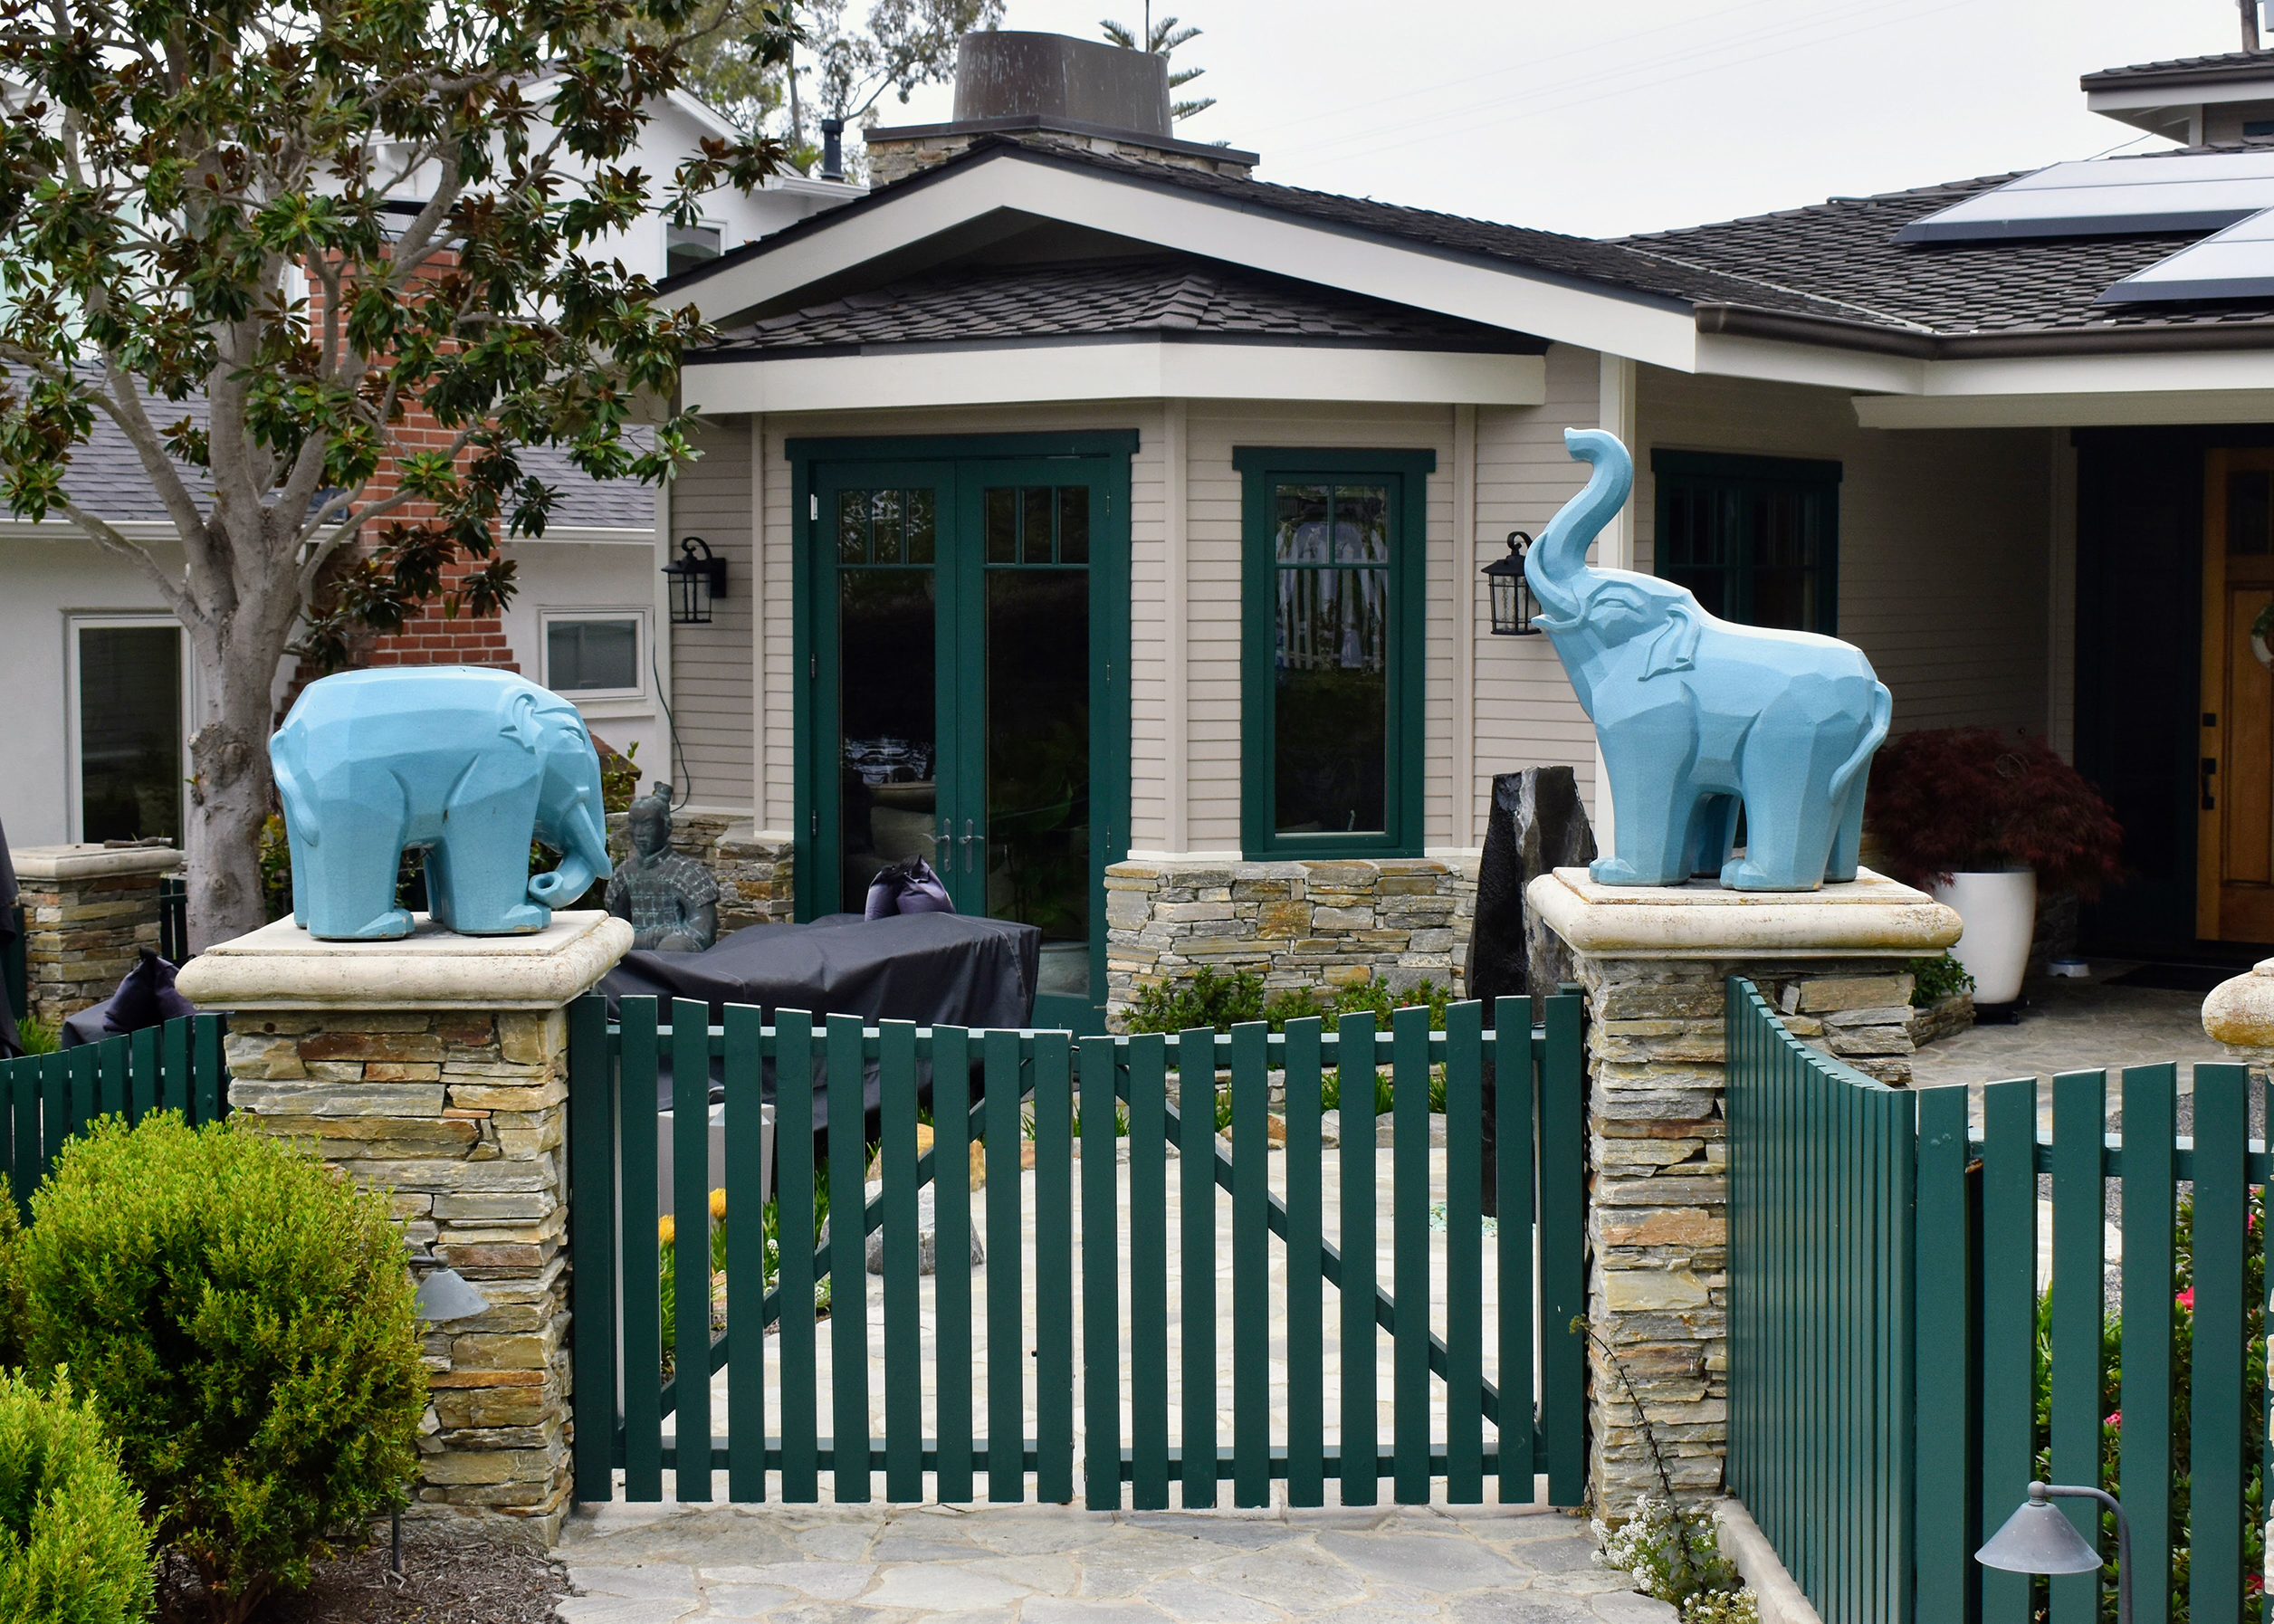 Elephant gate entrance to Garden #4